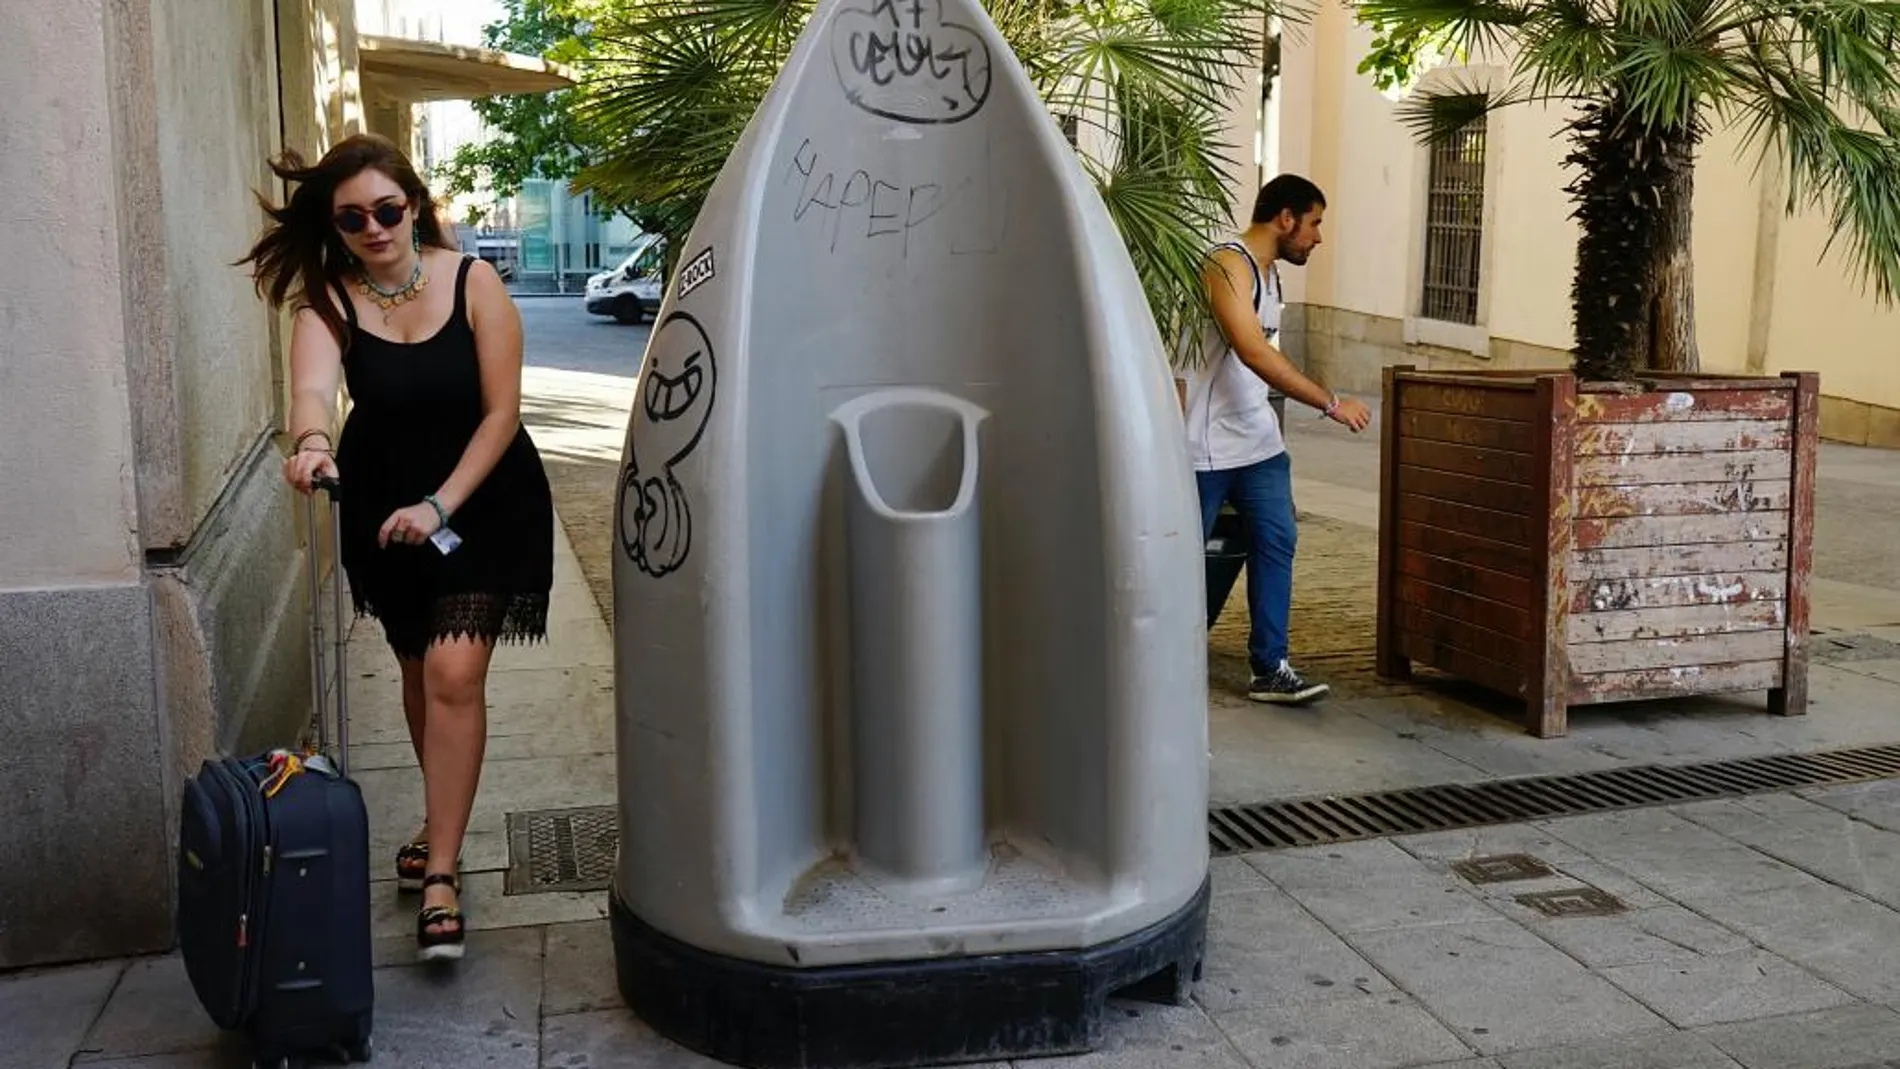 Uno de los urinarios instalados en el centro de Madrid